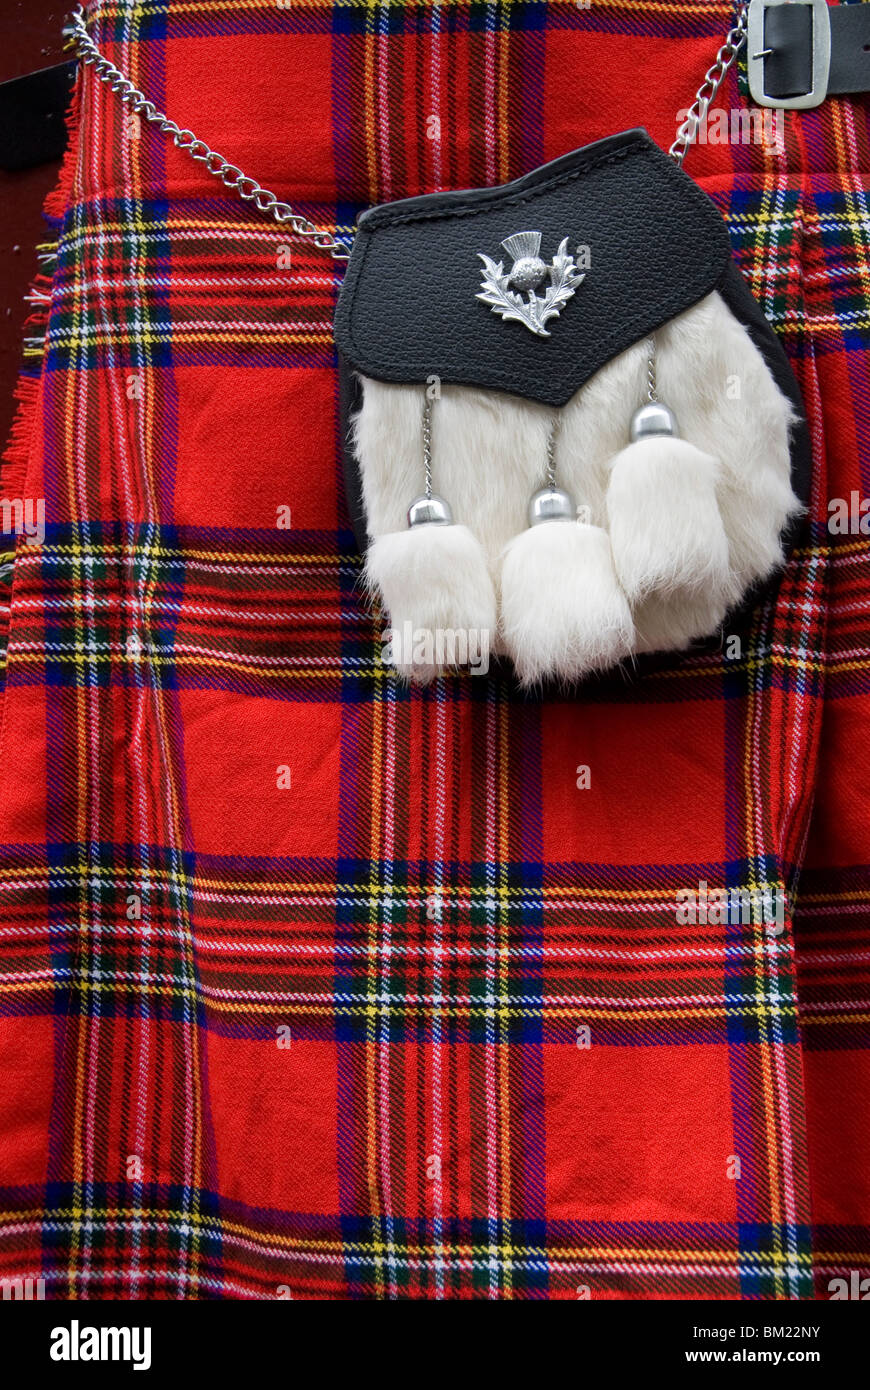 Kilt écossais et sac à main sur l'écran de vente, Édimbourg, Écosse, Royaume-Uni, Europe Banque D'Images